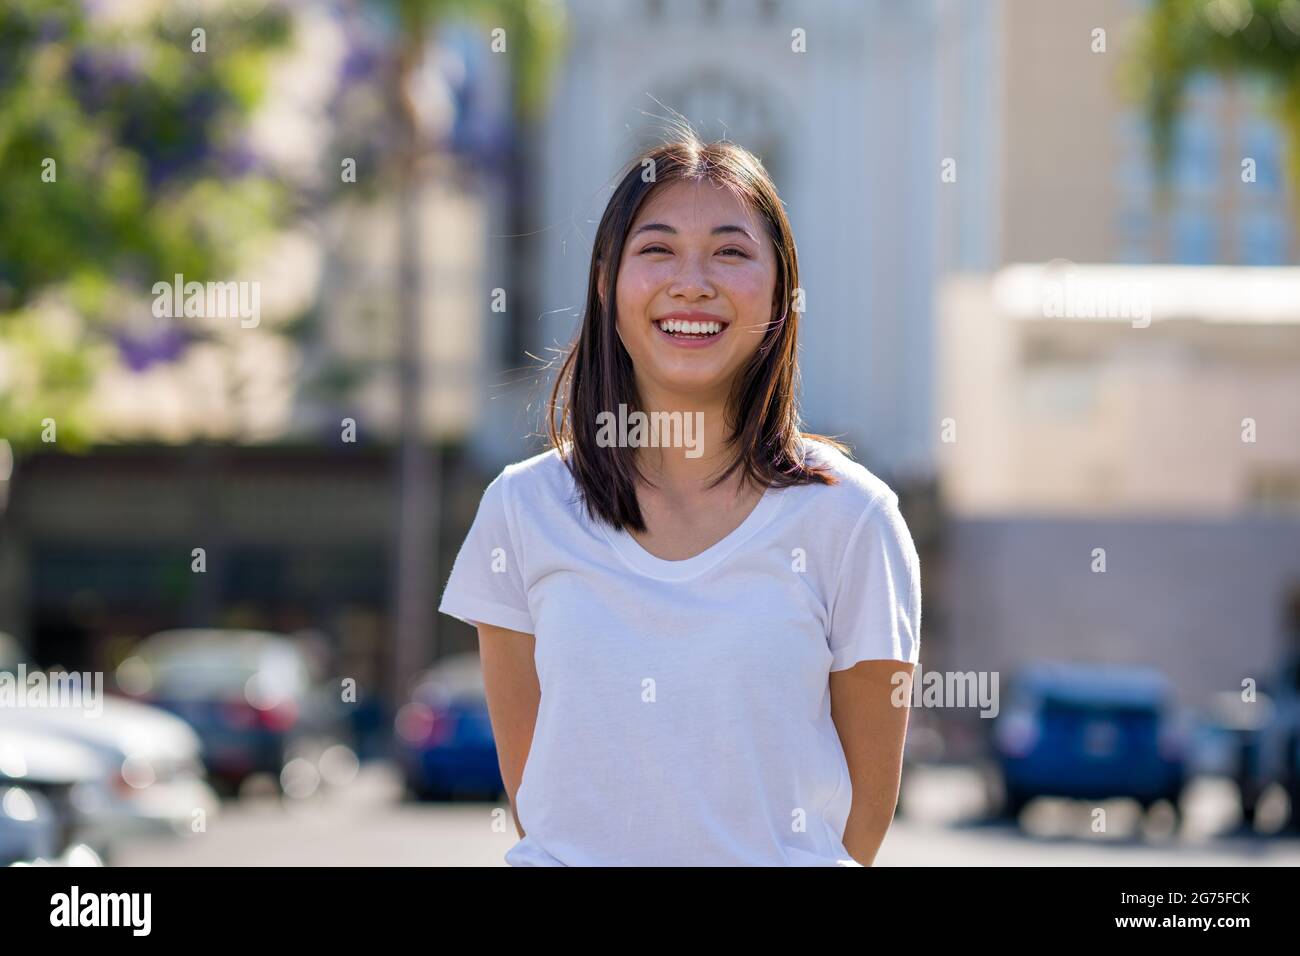 Porträts einer jungen asiatischen Frau, die auf einem Parkplatz in der Innenstadt läuft Stockfoto